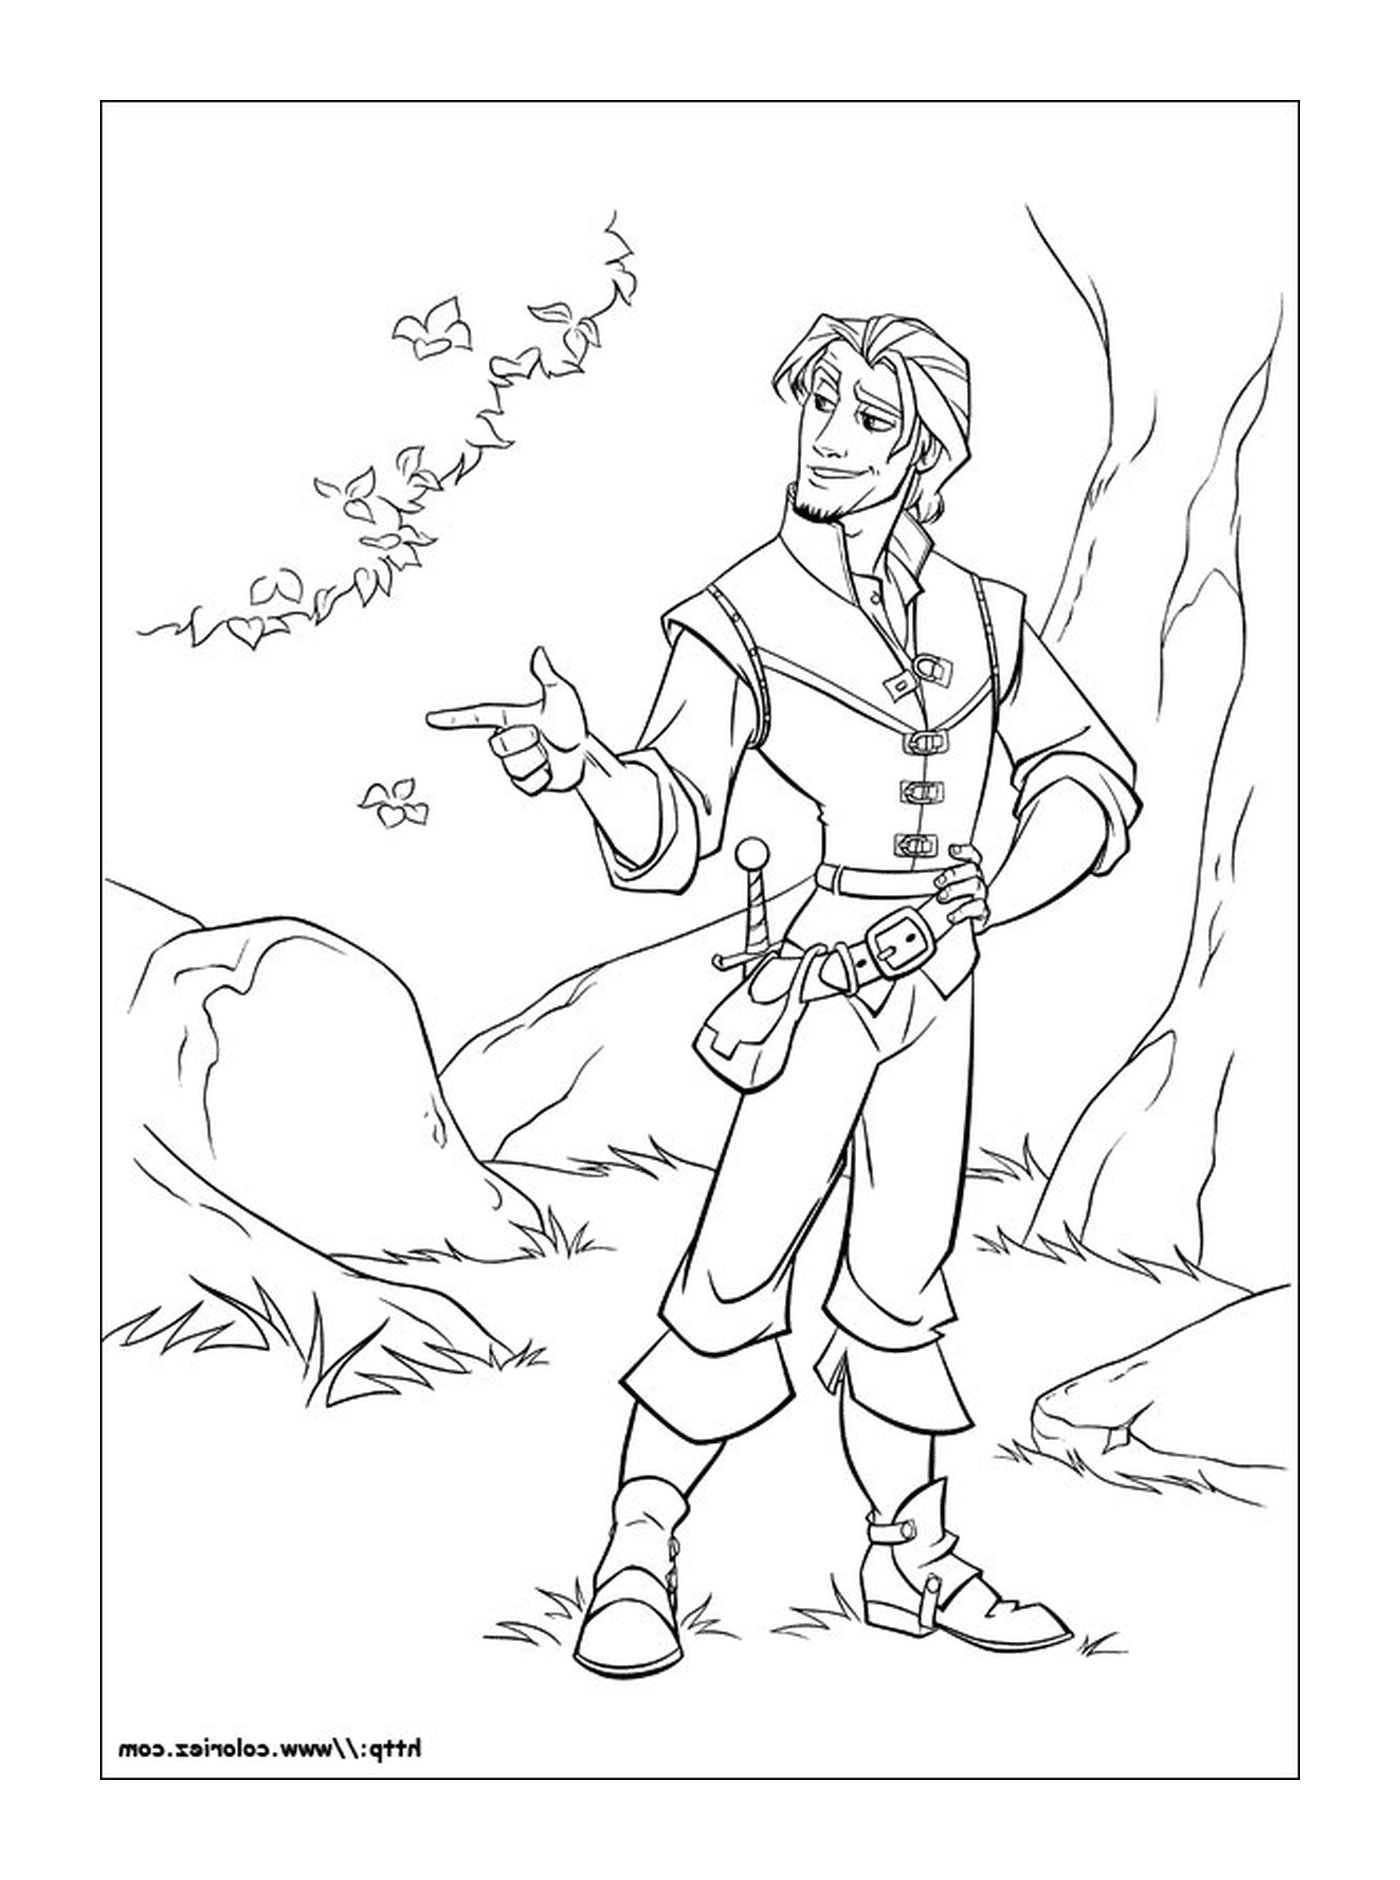  Flynn Rider, fearless adventurer 